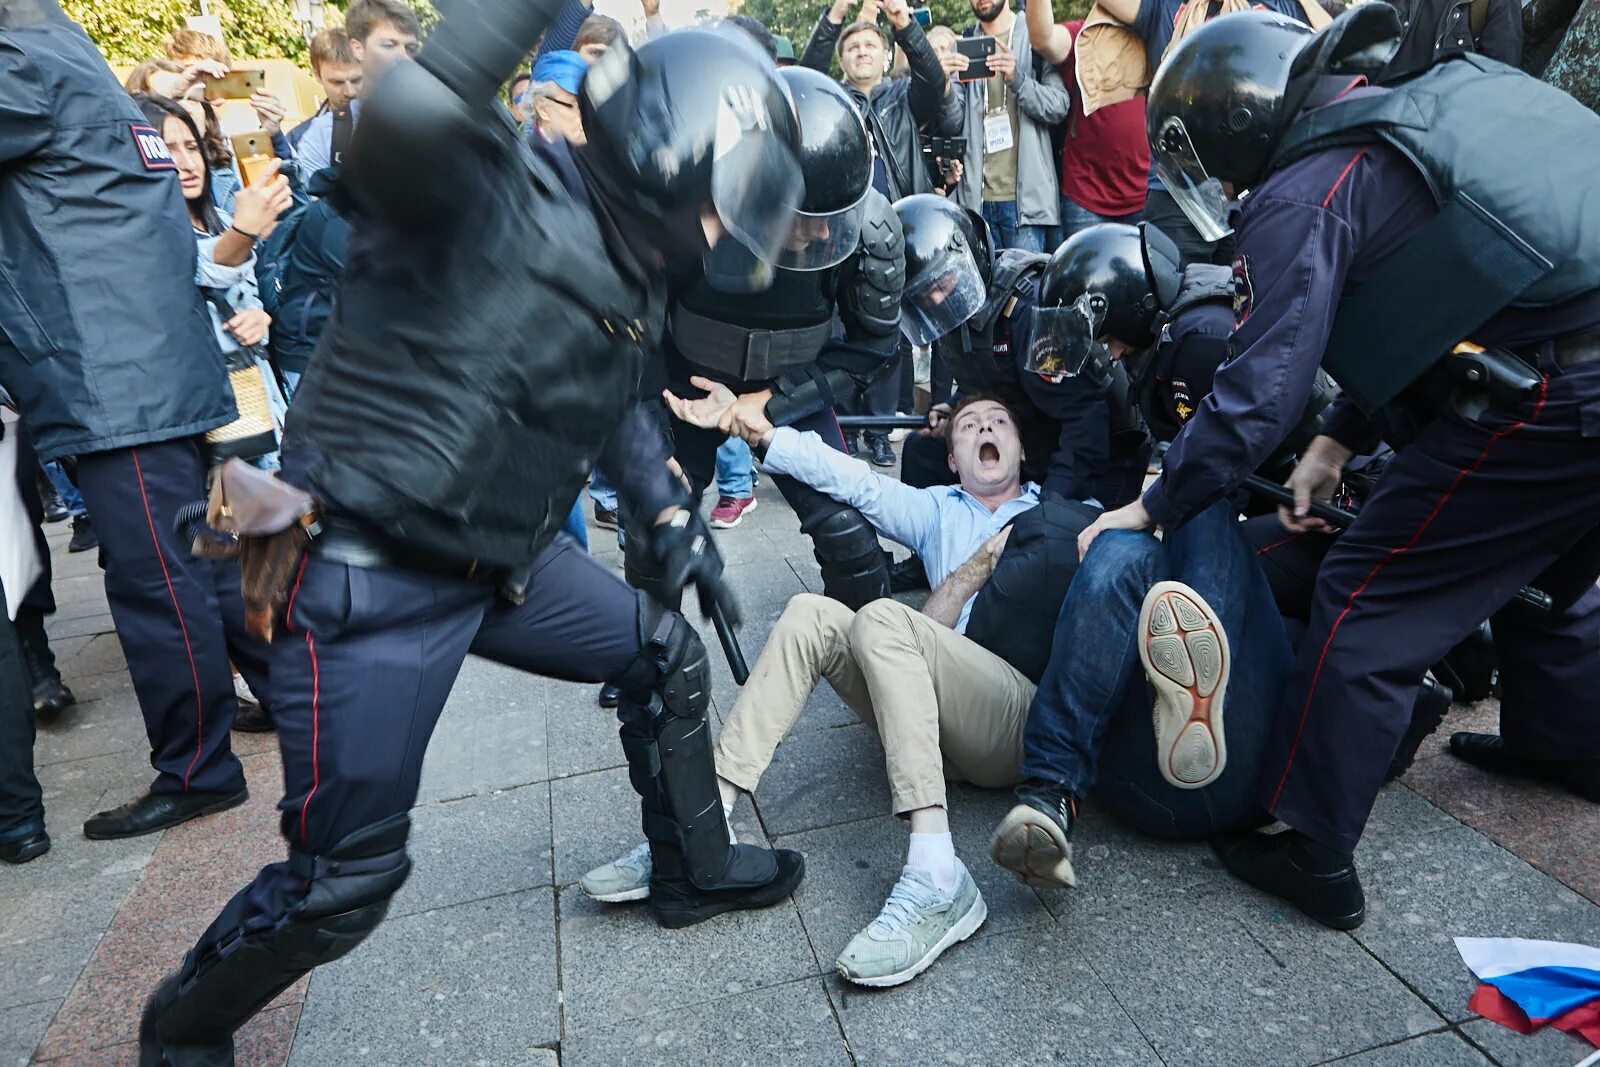 Полиция избивает митингующих. Разгон демонстрации в Москве. Бьют омон